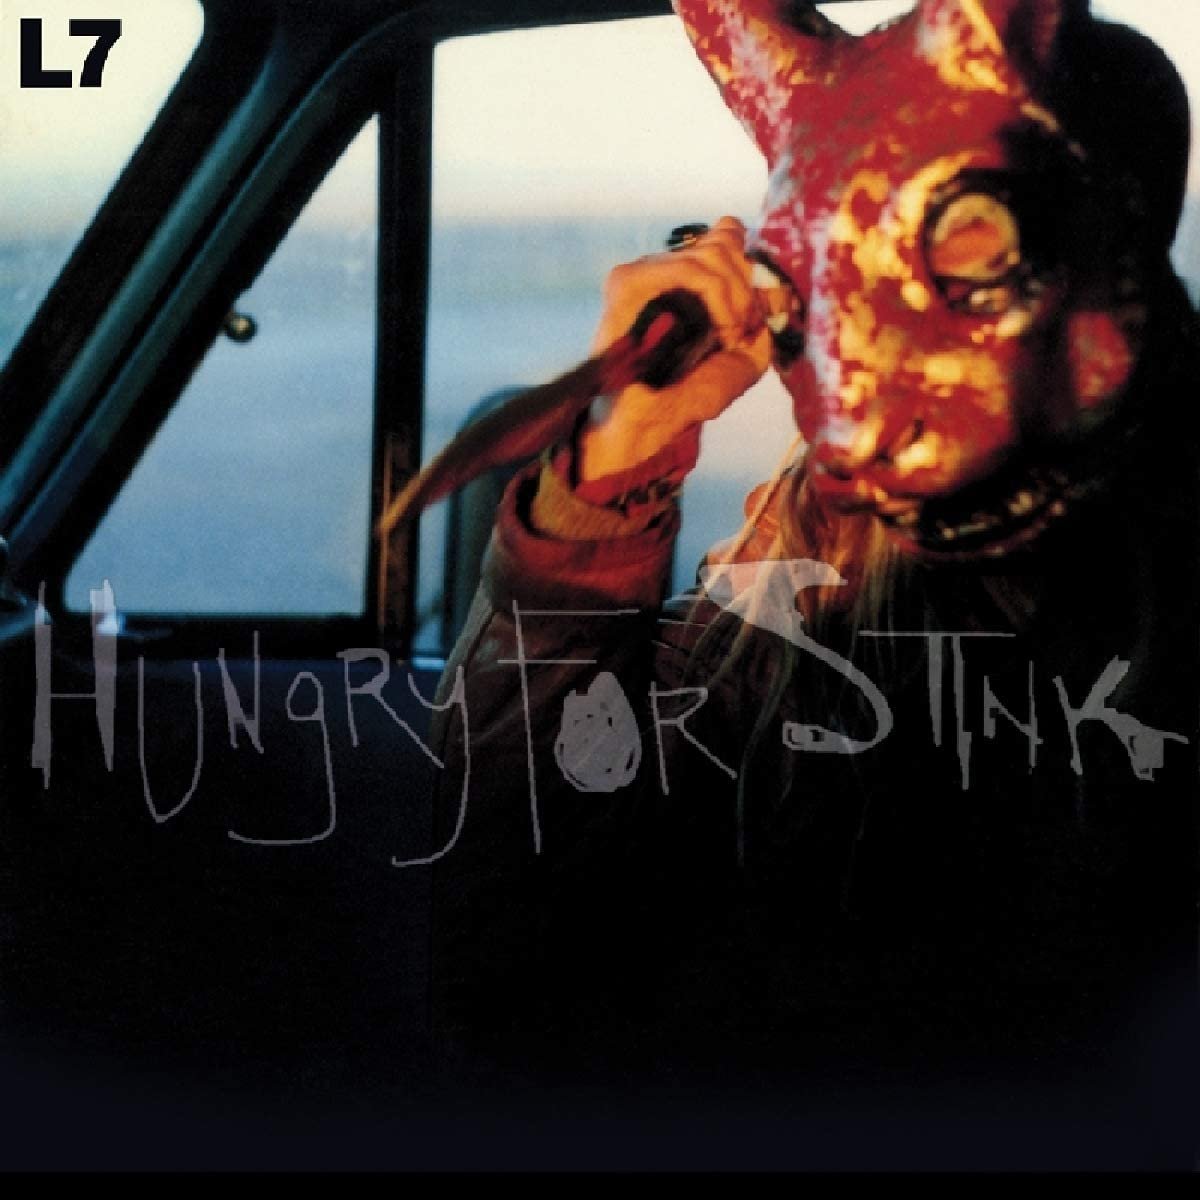 You are currently viewing Godišnjica objavljivanja albuma Hungry for Stink ženskog sastava L7